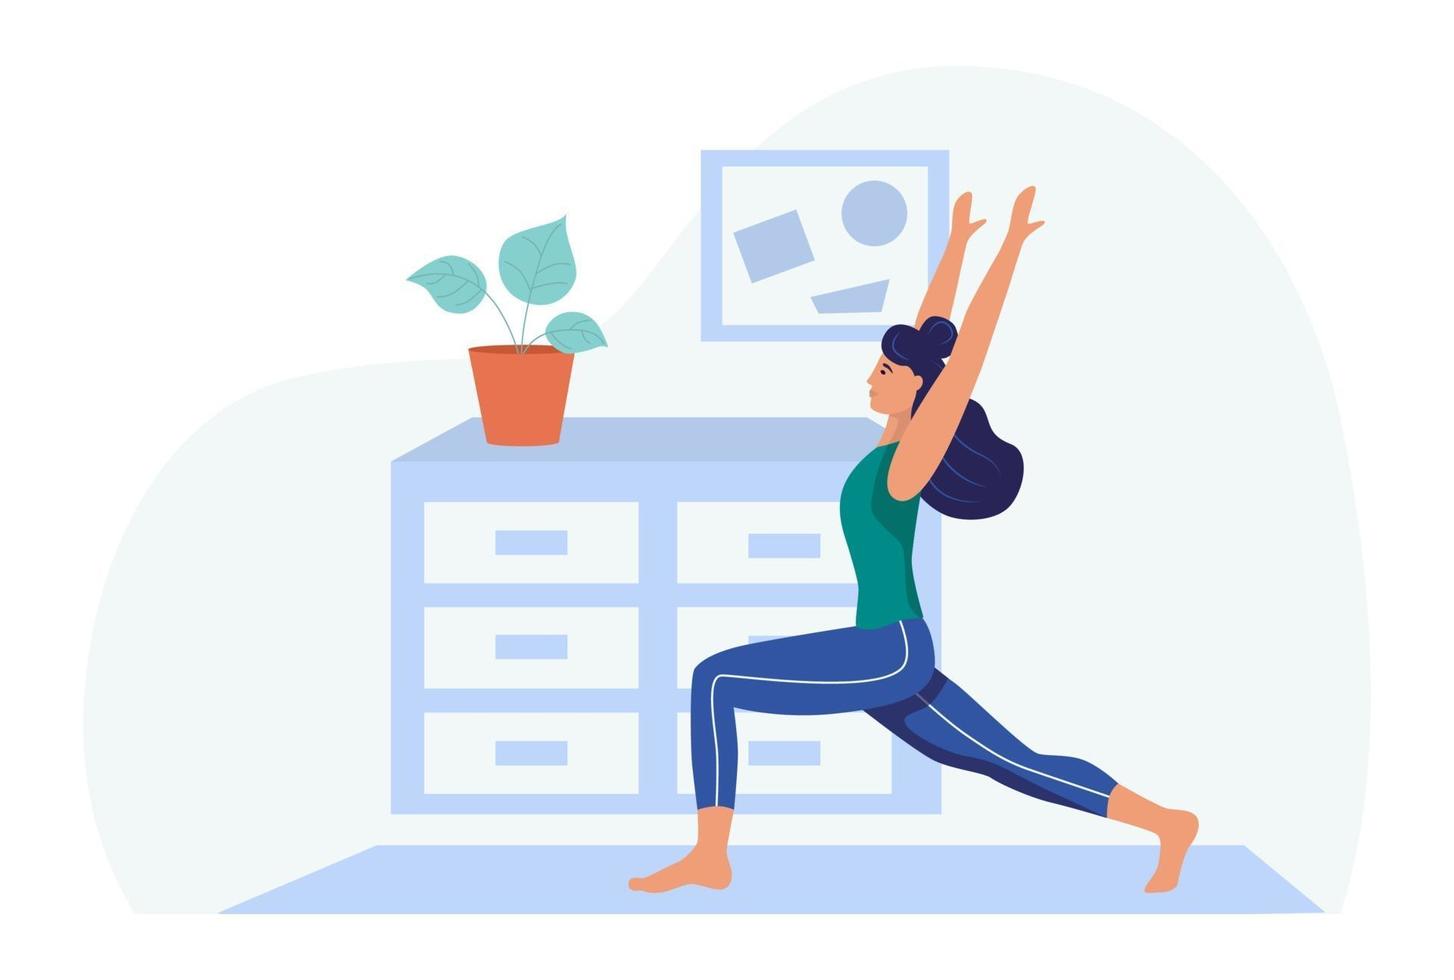 una mujer joven hace yoga en casa, el concepto de la vida diaria, el ocio diario y las actividades laborales. ilustración vectorial de dibujos animados plana. vector